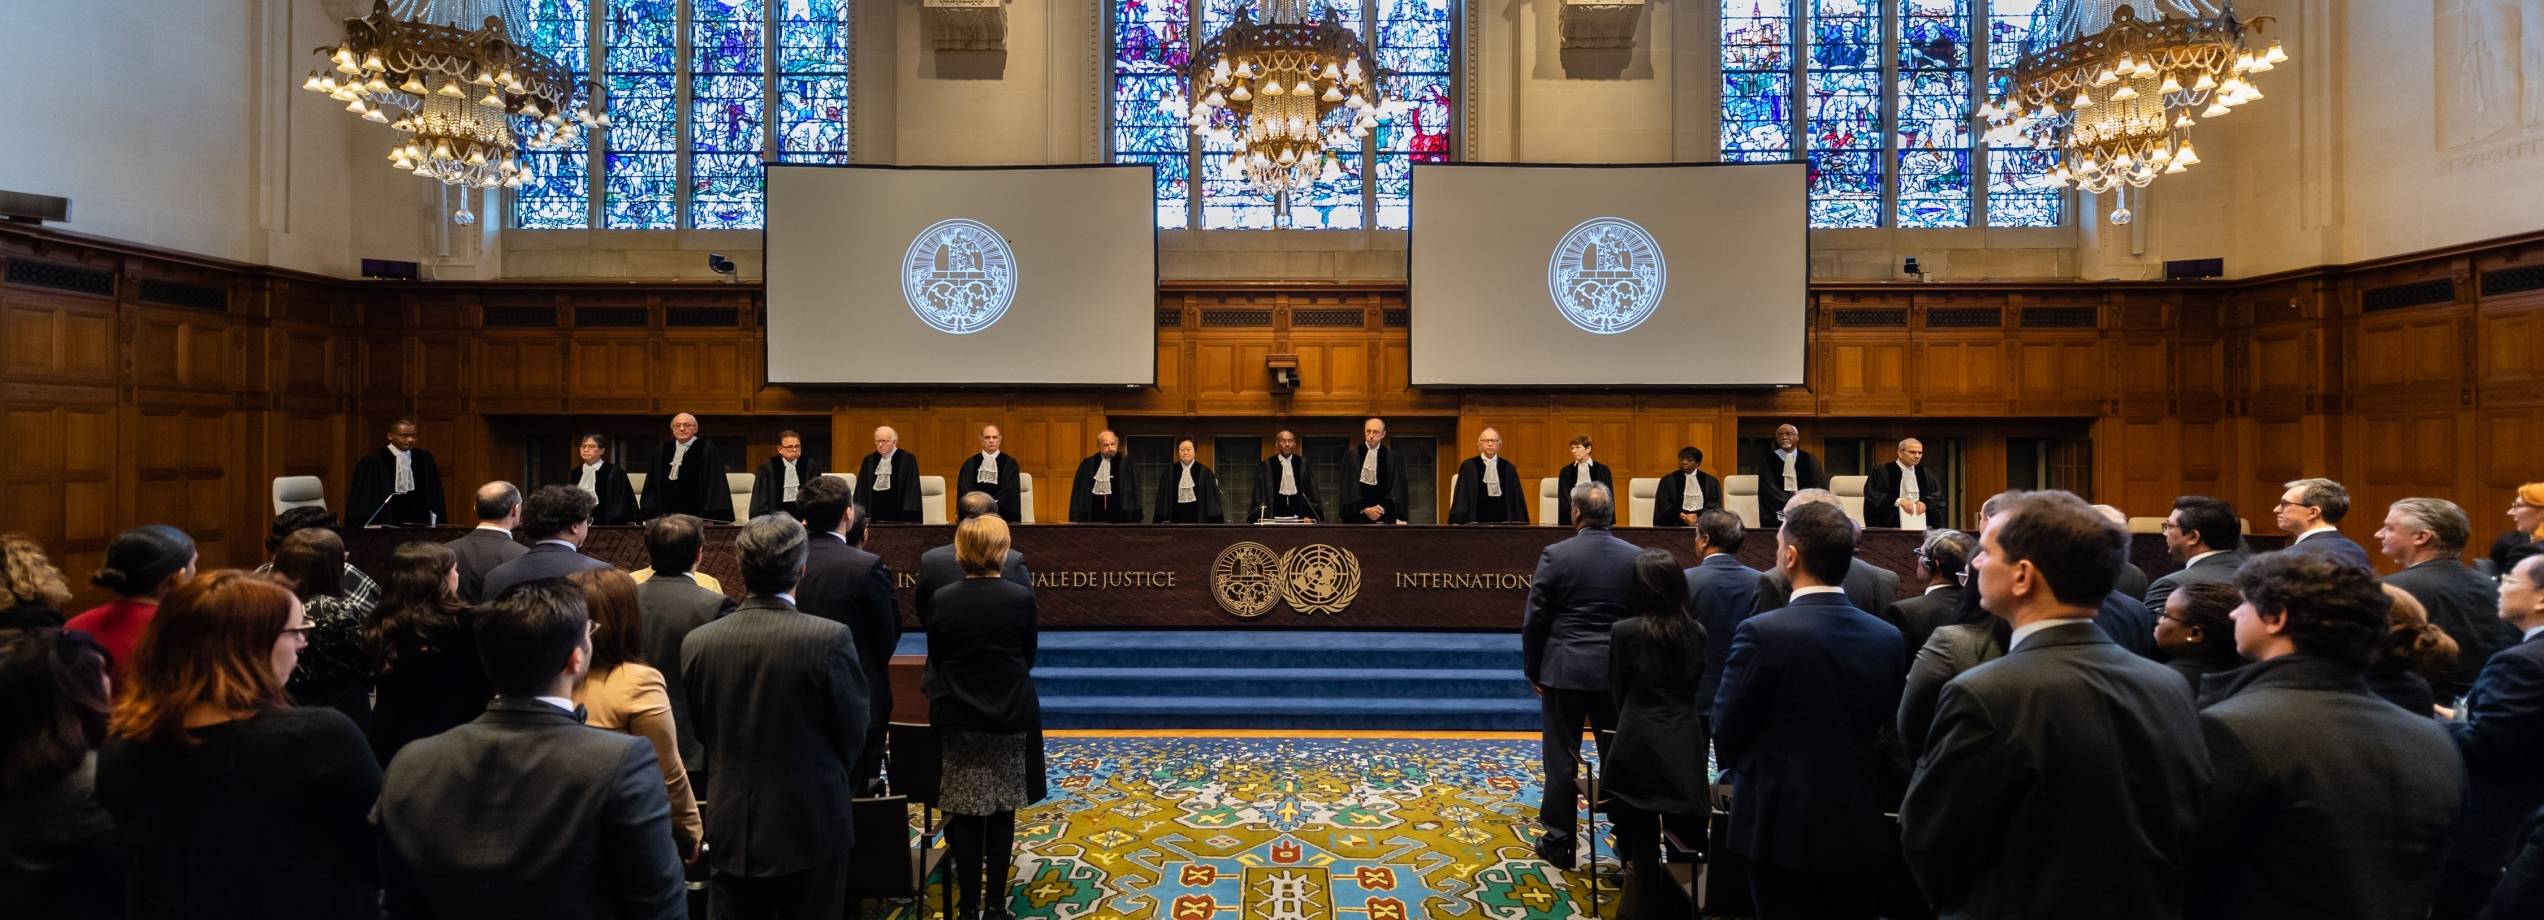 Den internasjonale domstolen